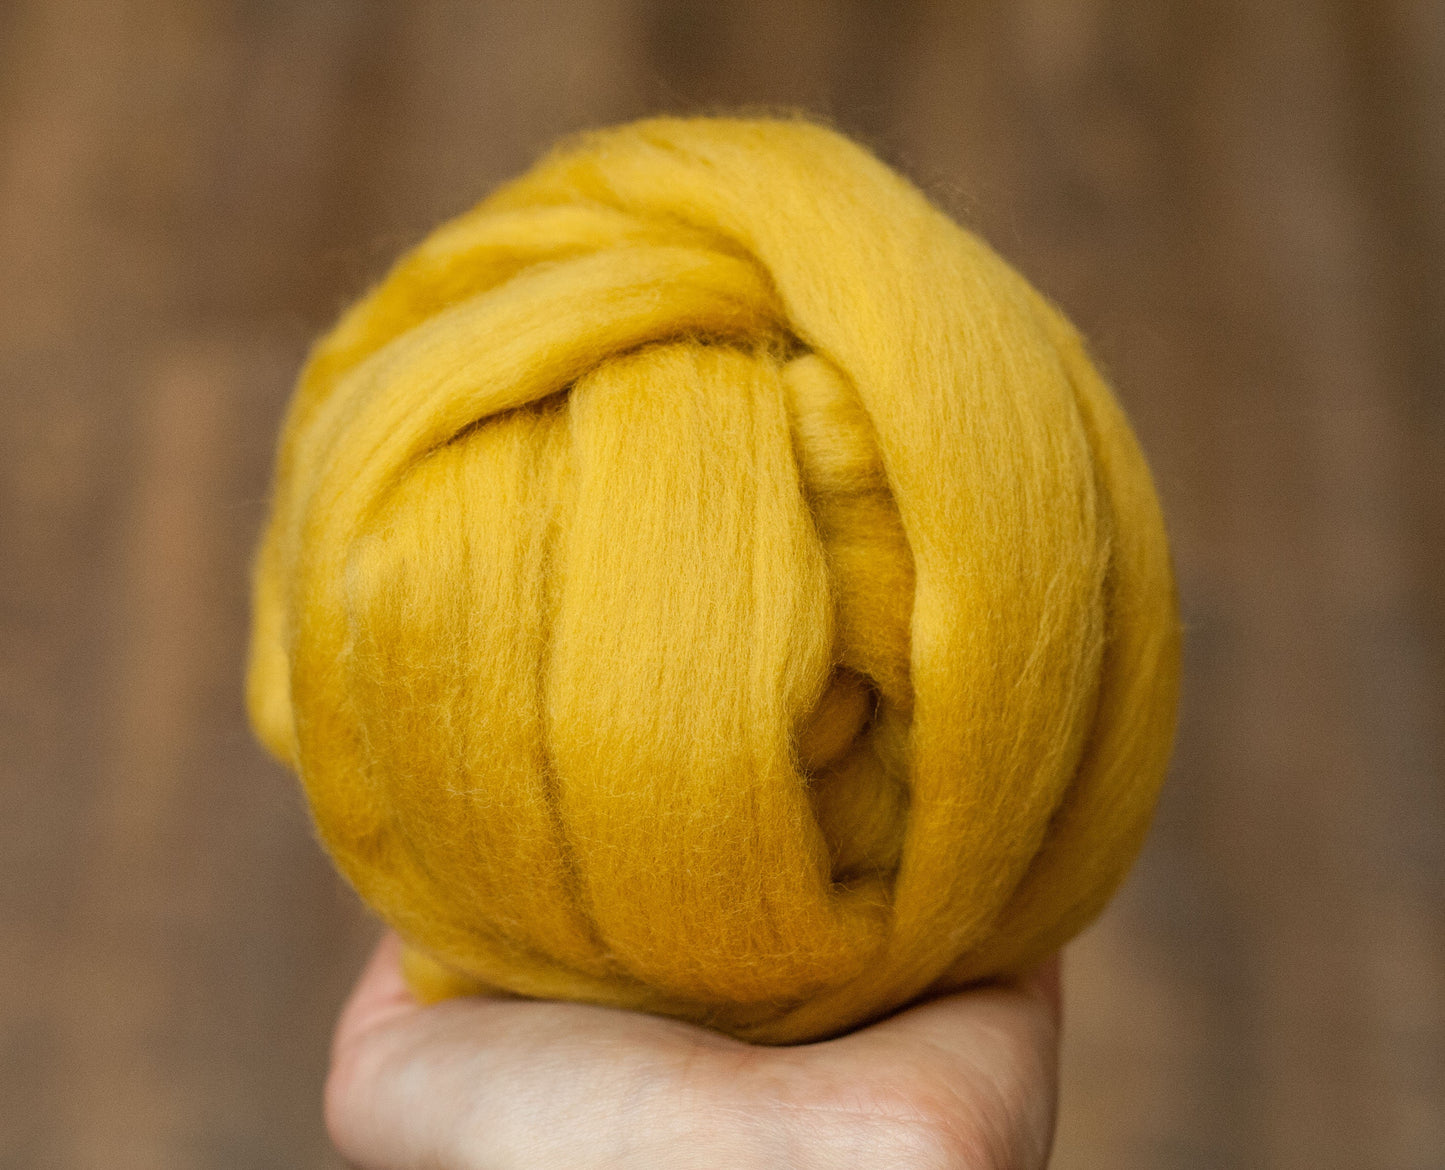 Wool Roving - 22. Bright Yellow